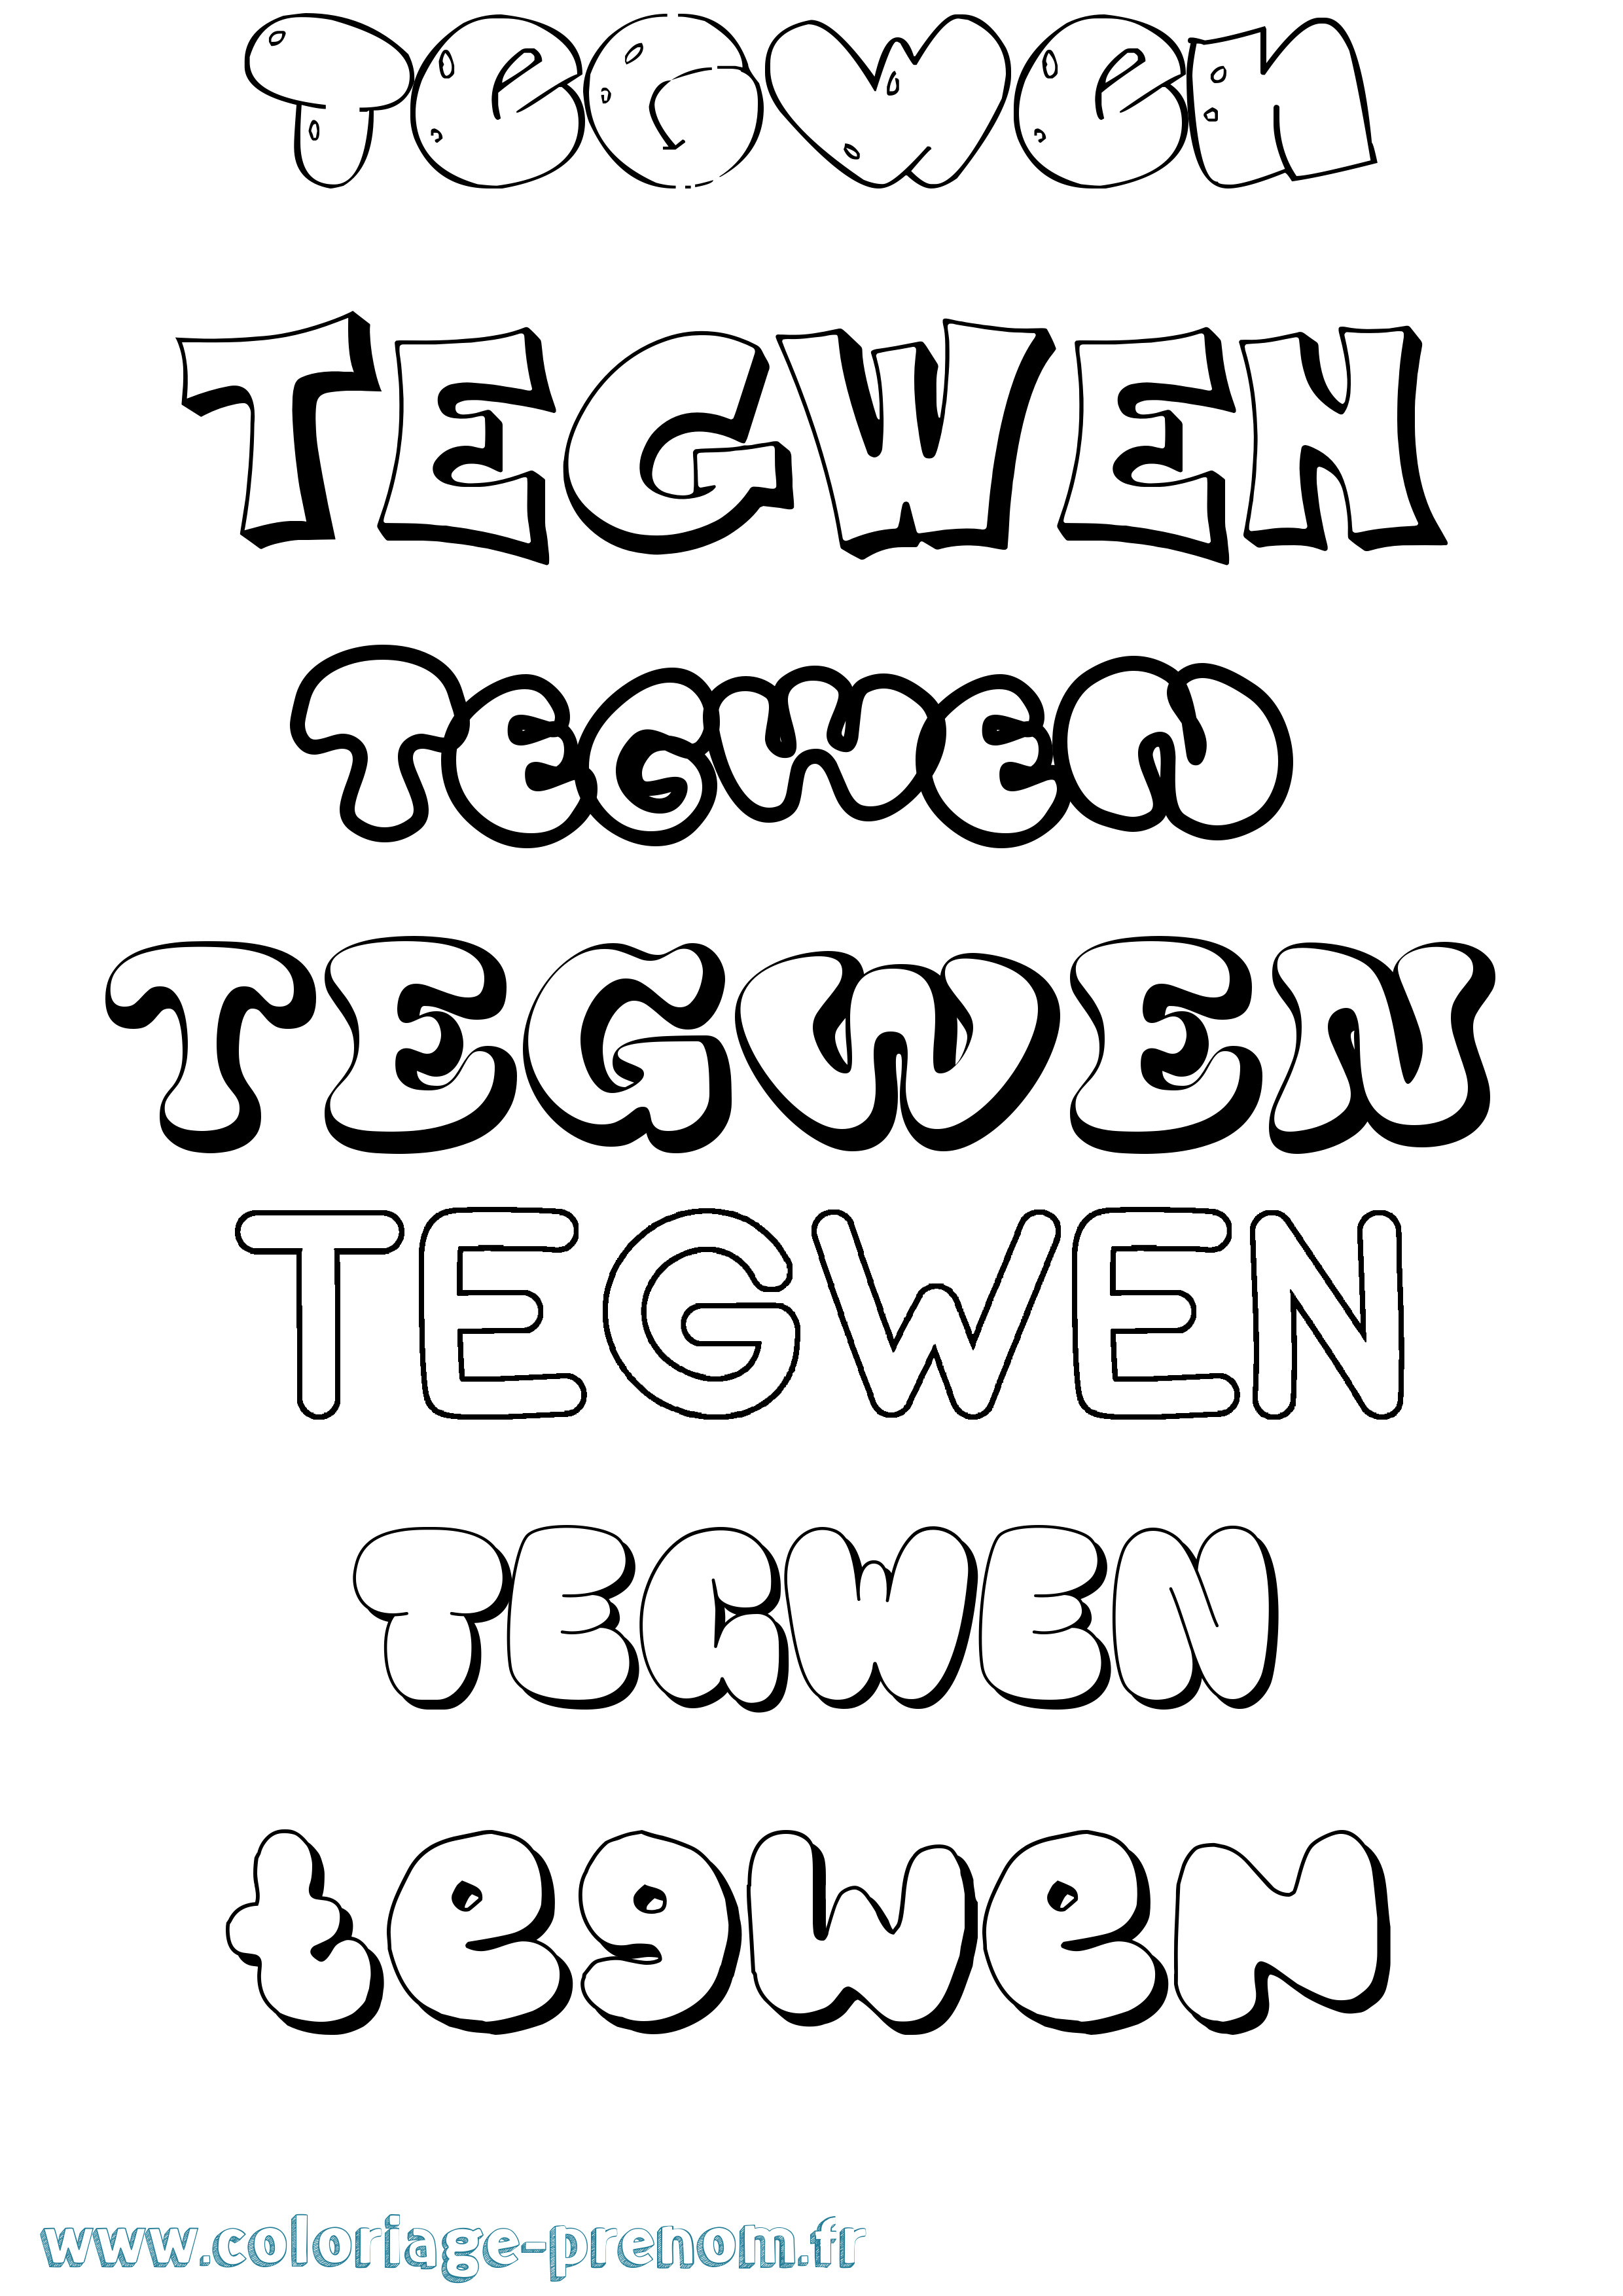 Coloriage prénom Tegwen Bubble